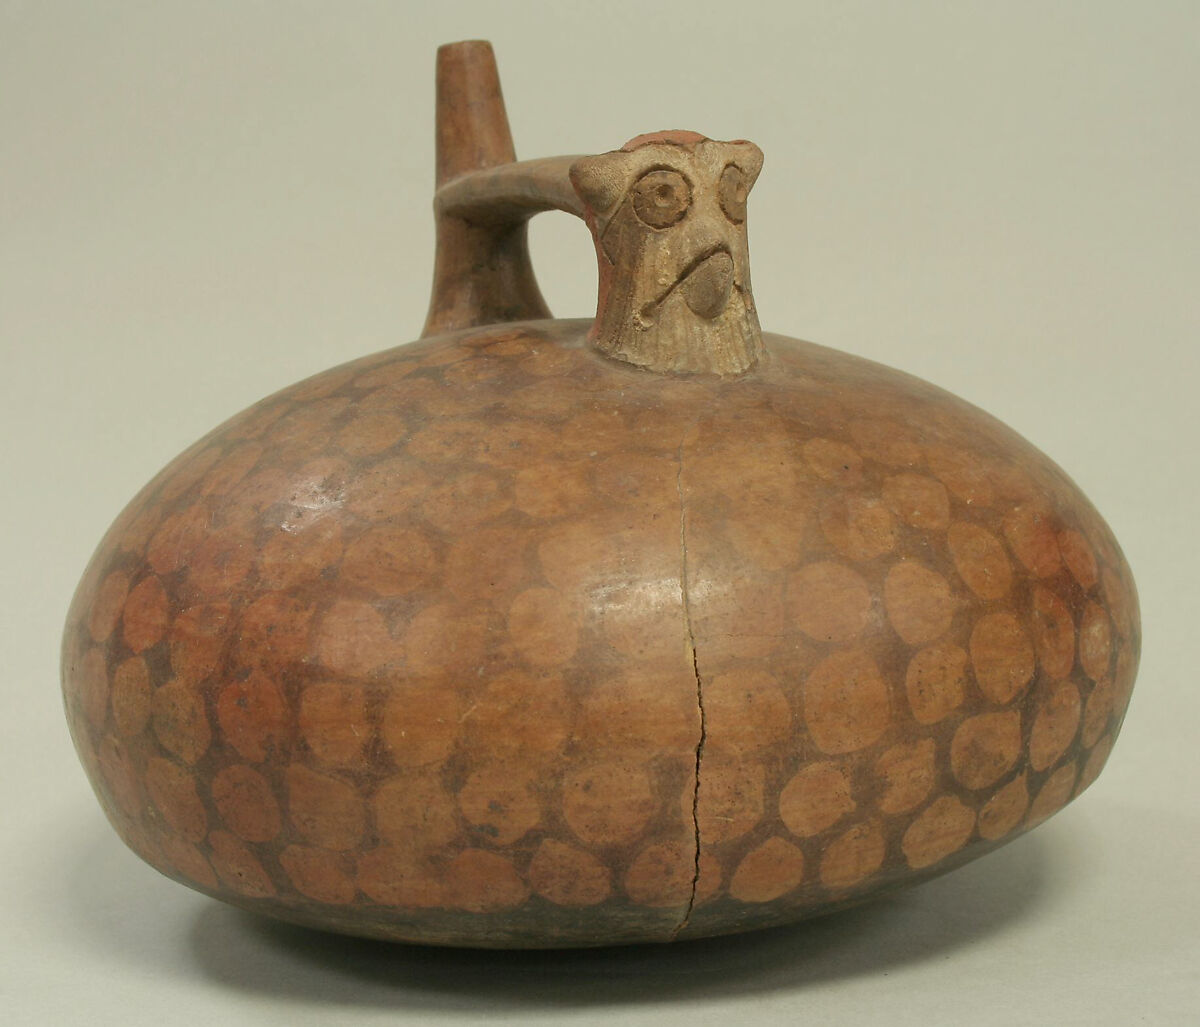 Double Spout and Bridge Bottle with Bird, Ceramic, Paracas 